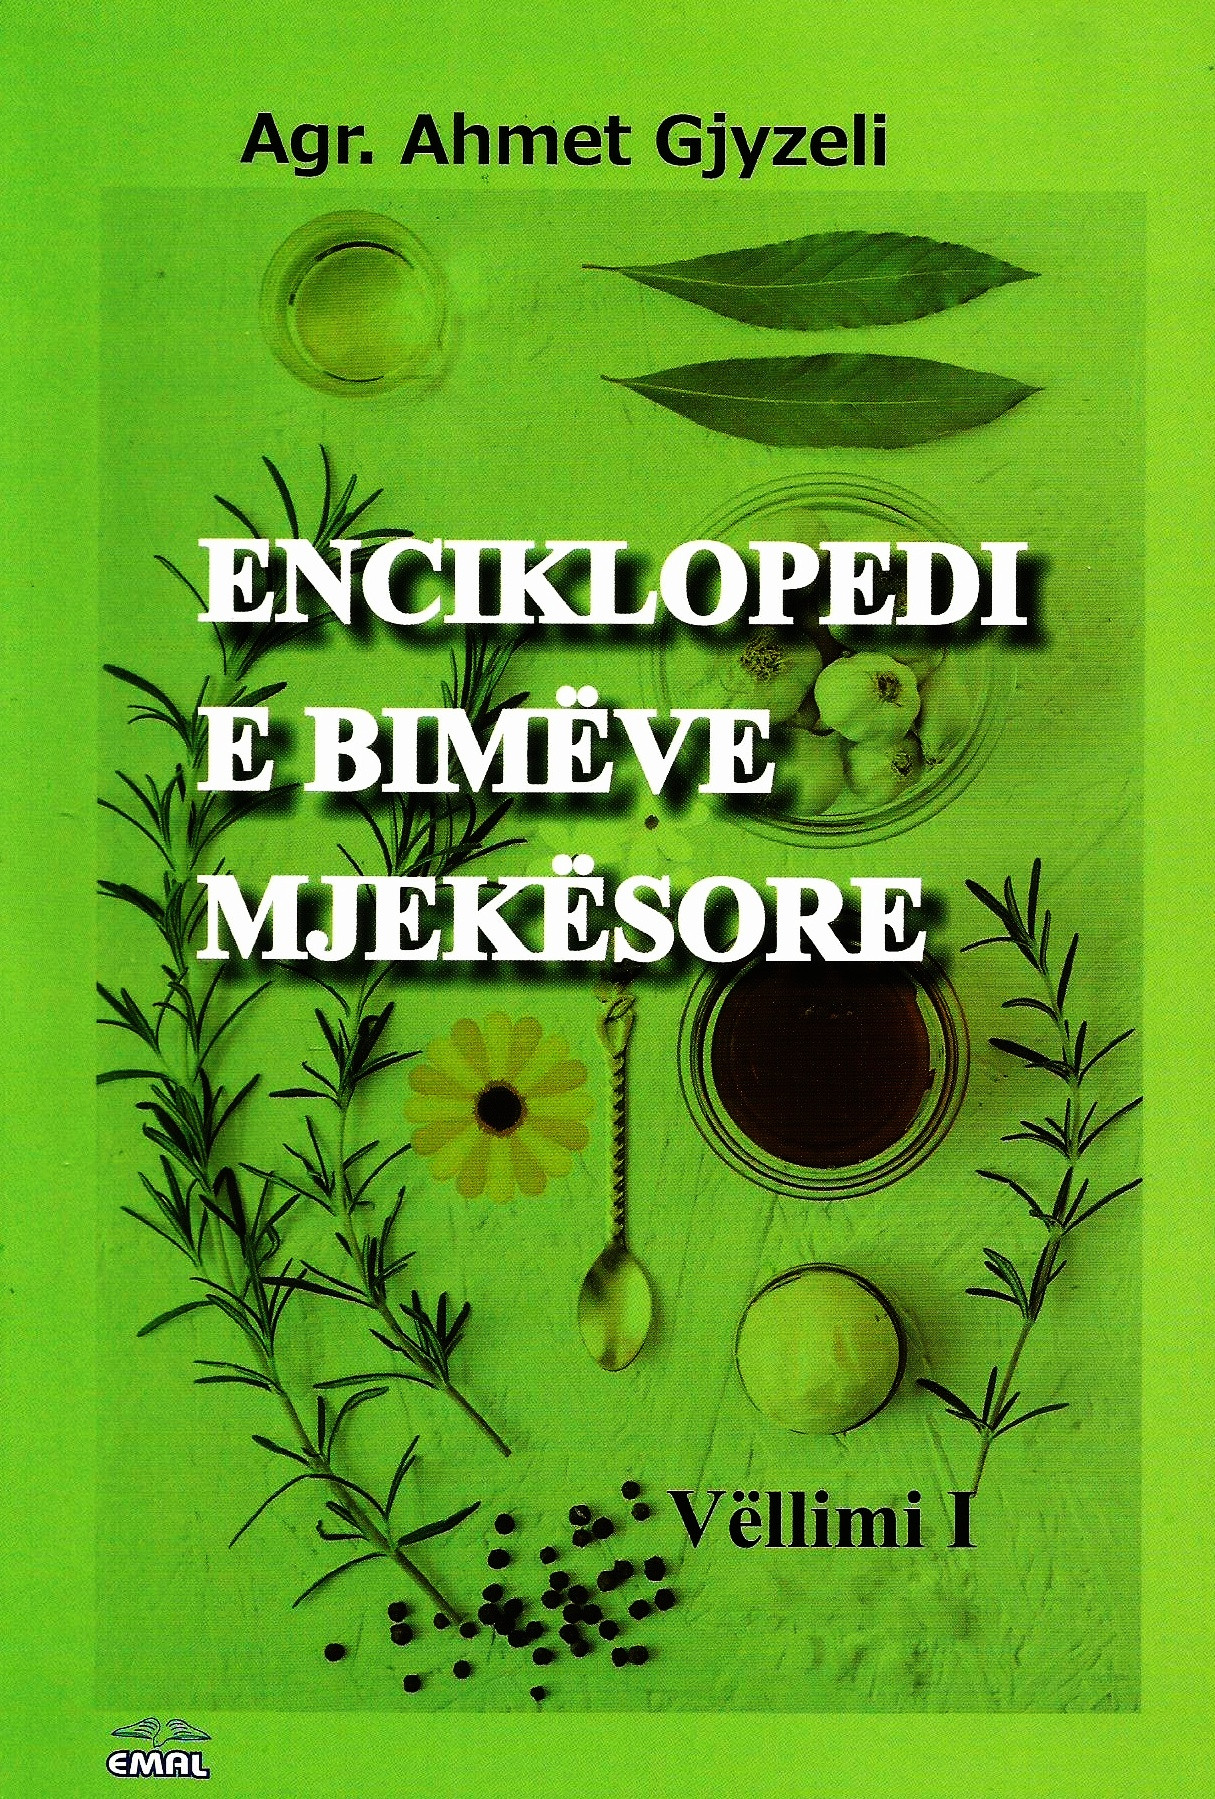 Enciklopedi e bimeve mjekesore